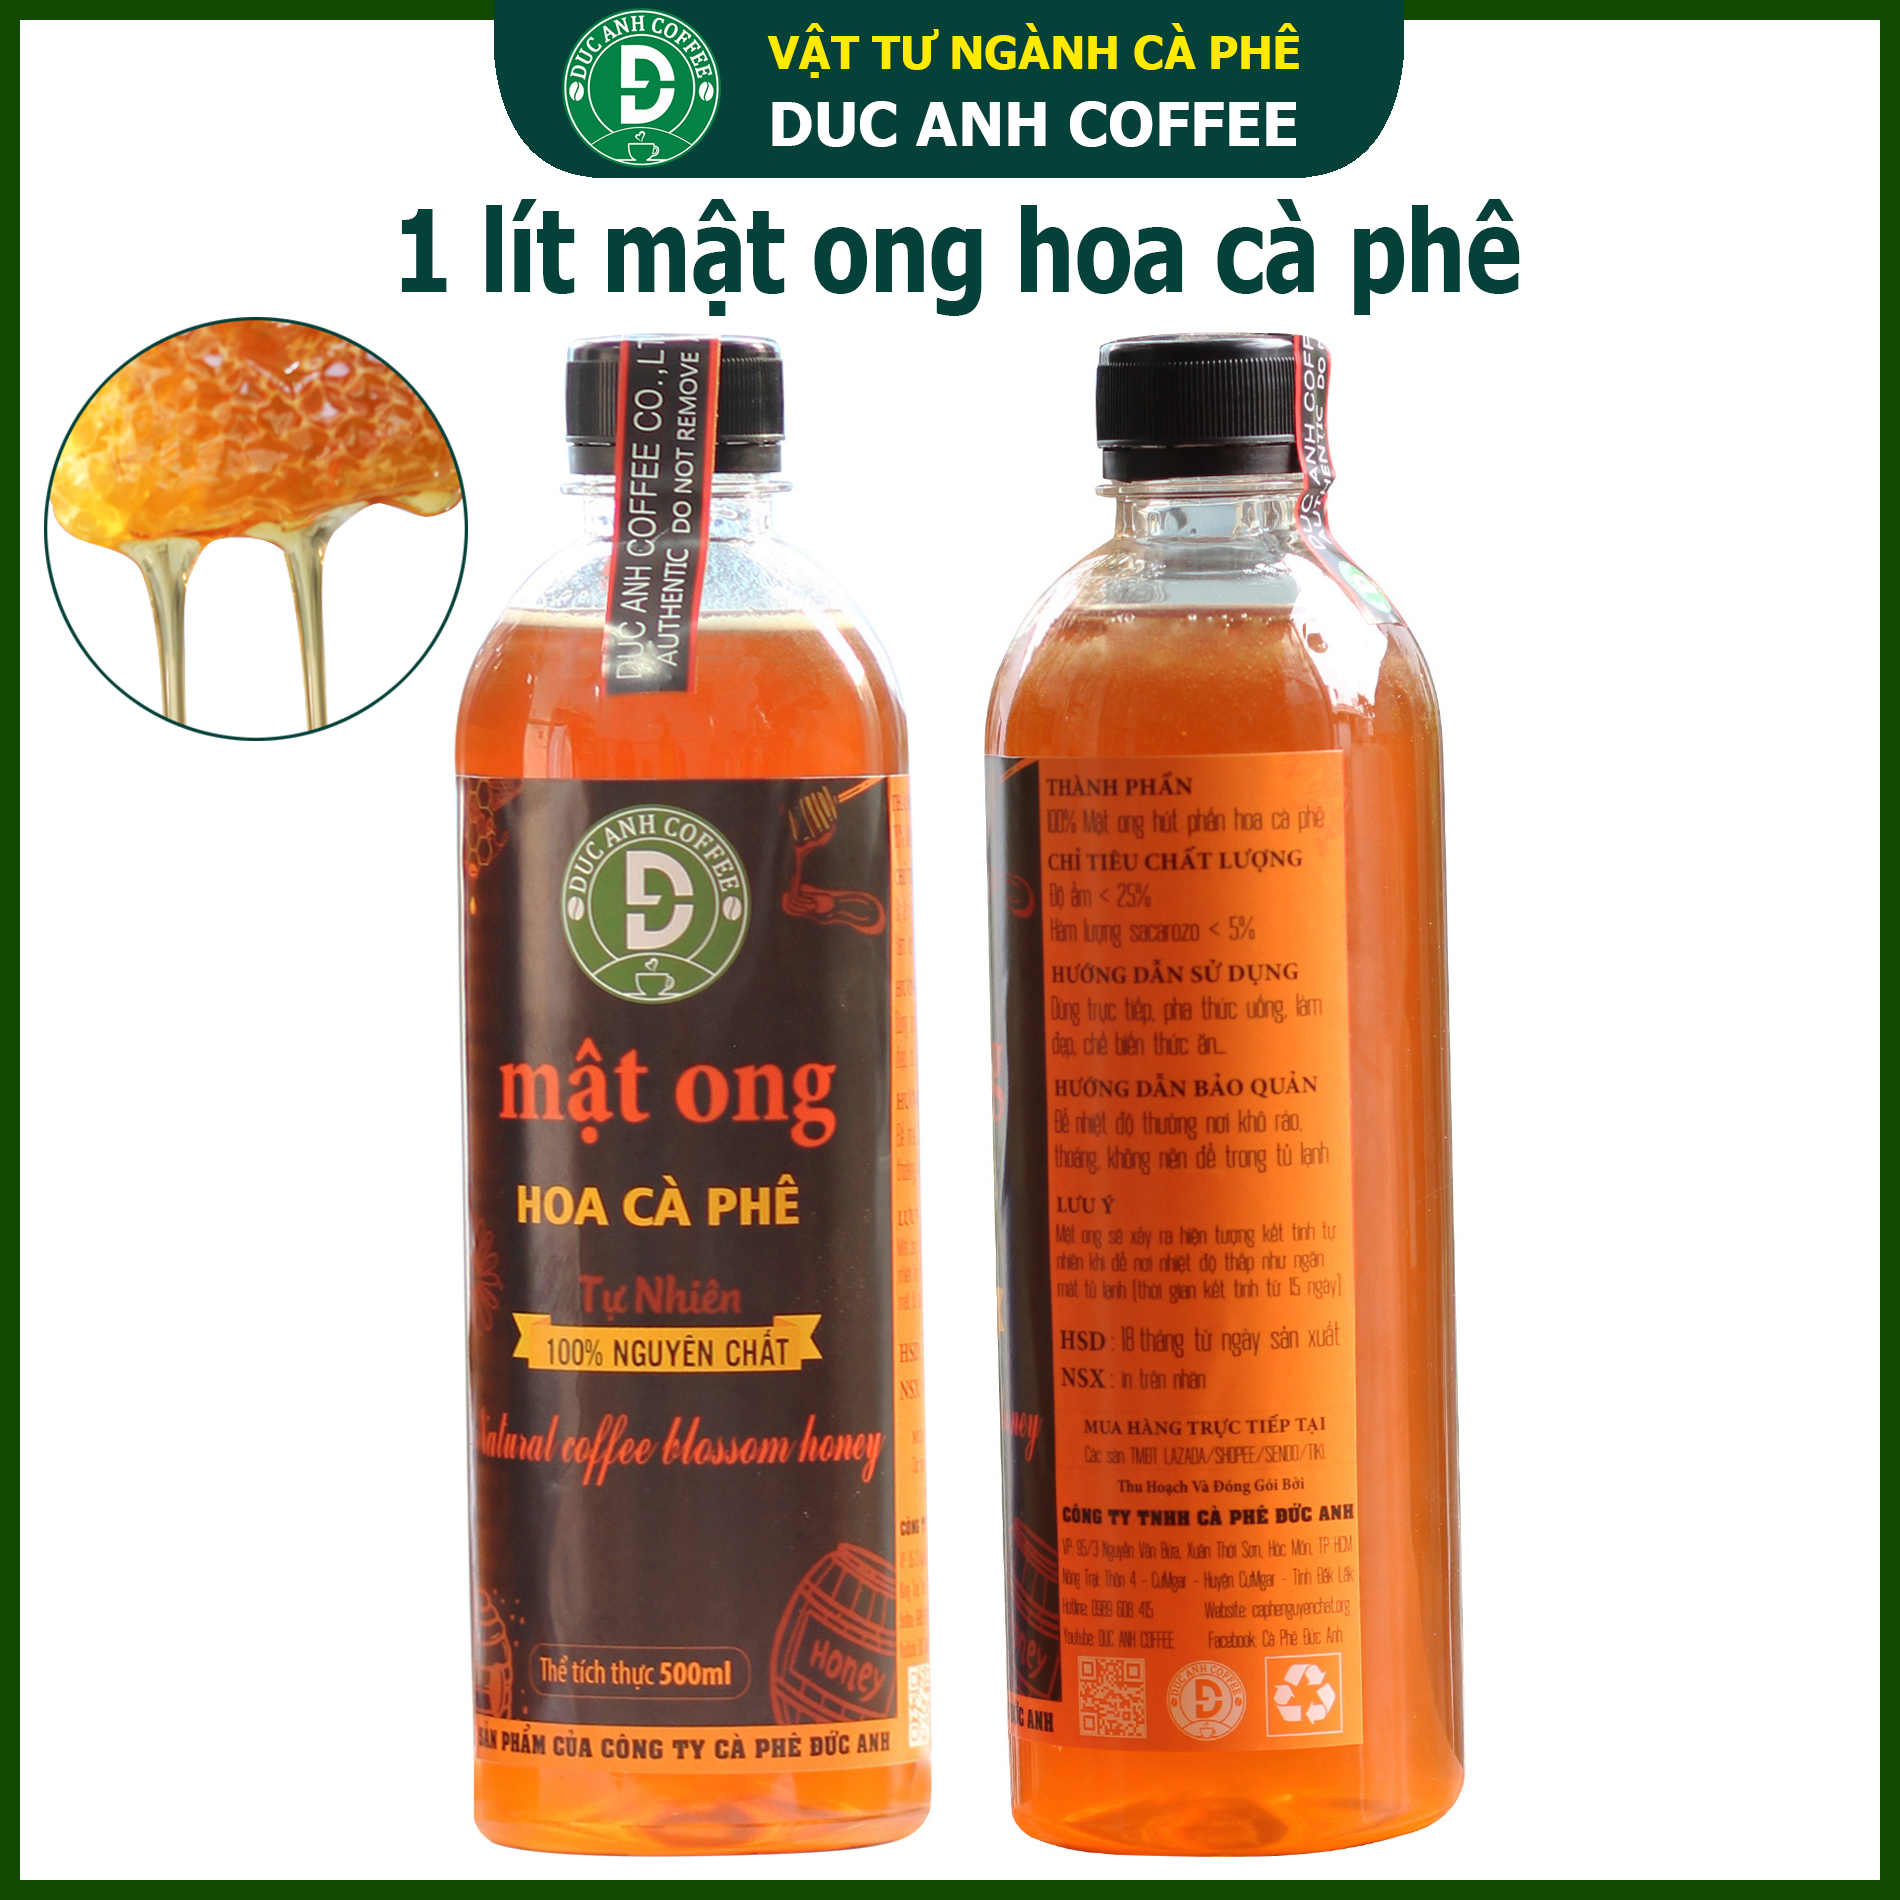 Honey pure coffee 2 bottles per bottle 700gr equivalent 500ml - Honey from